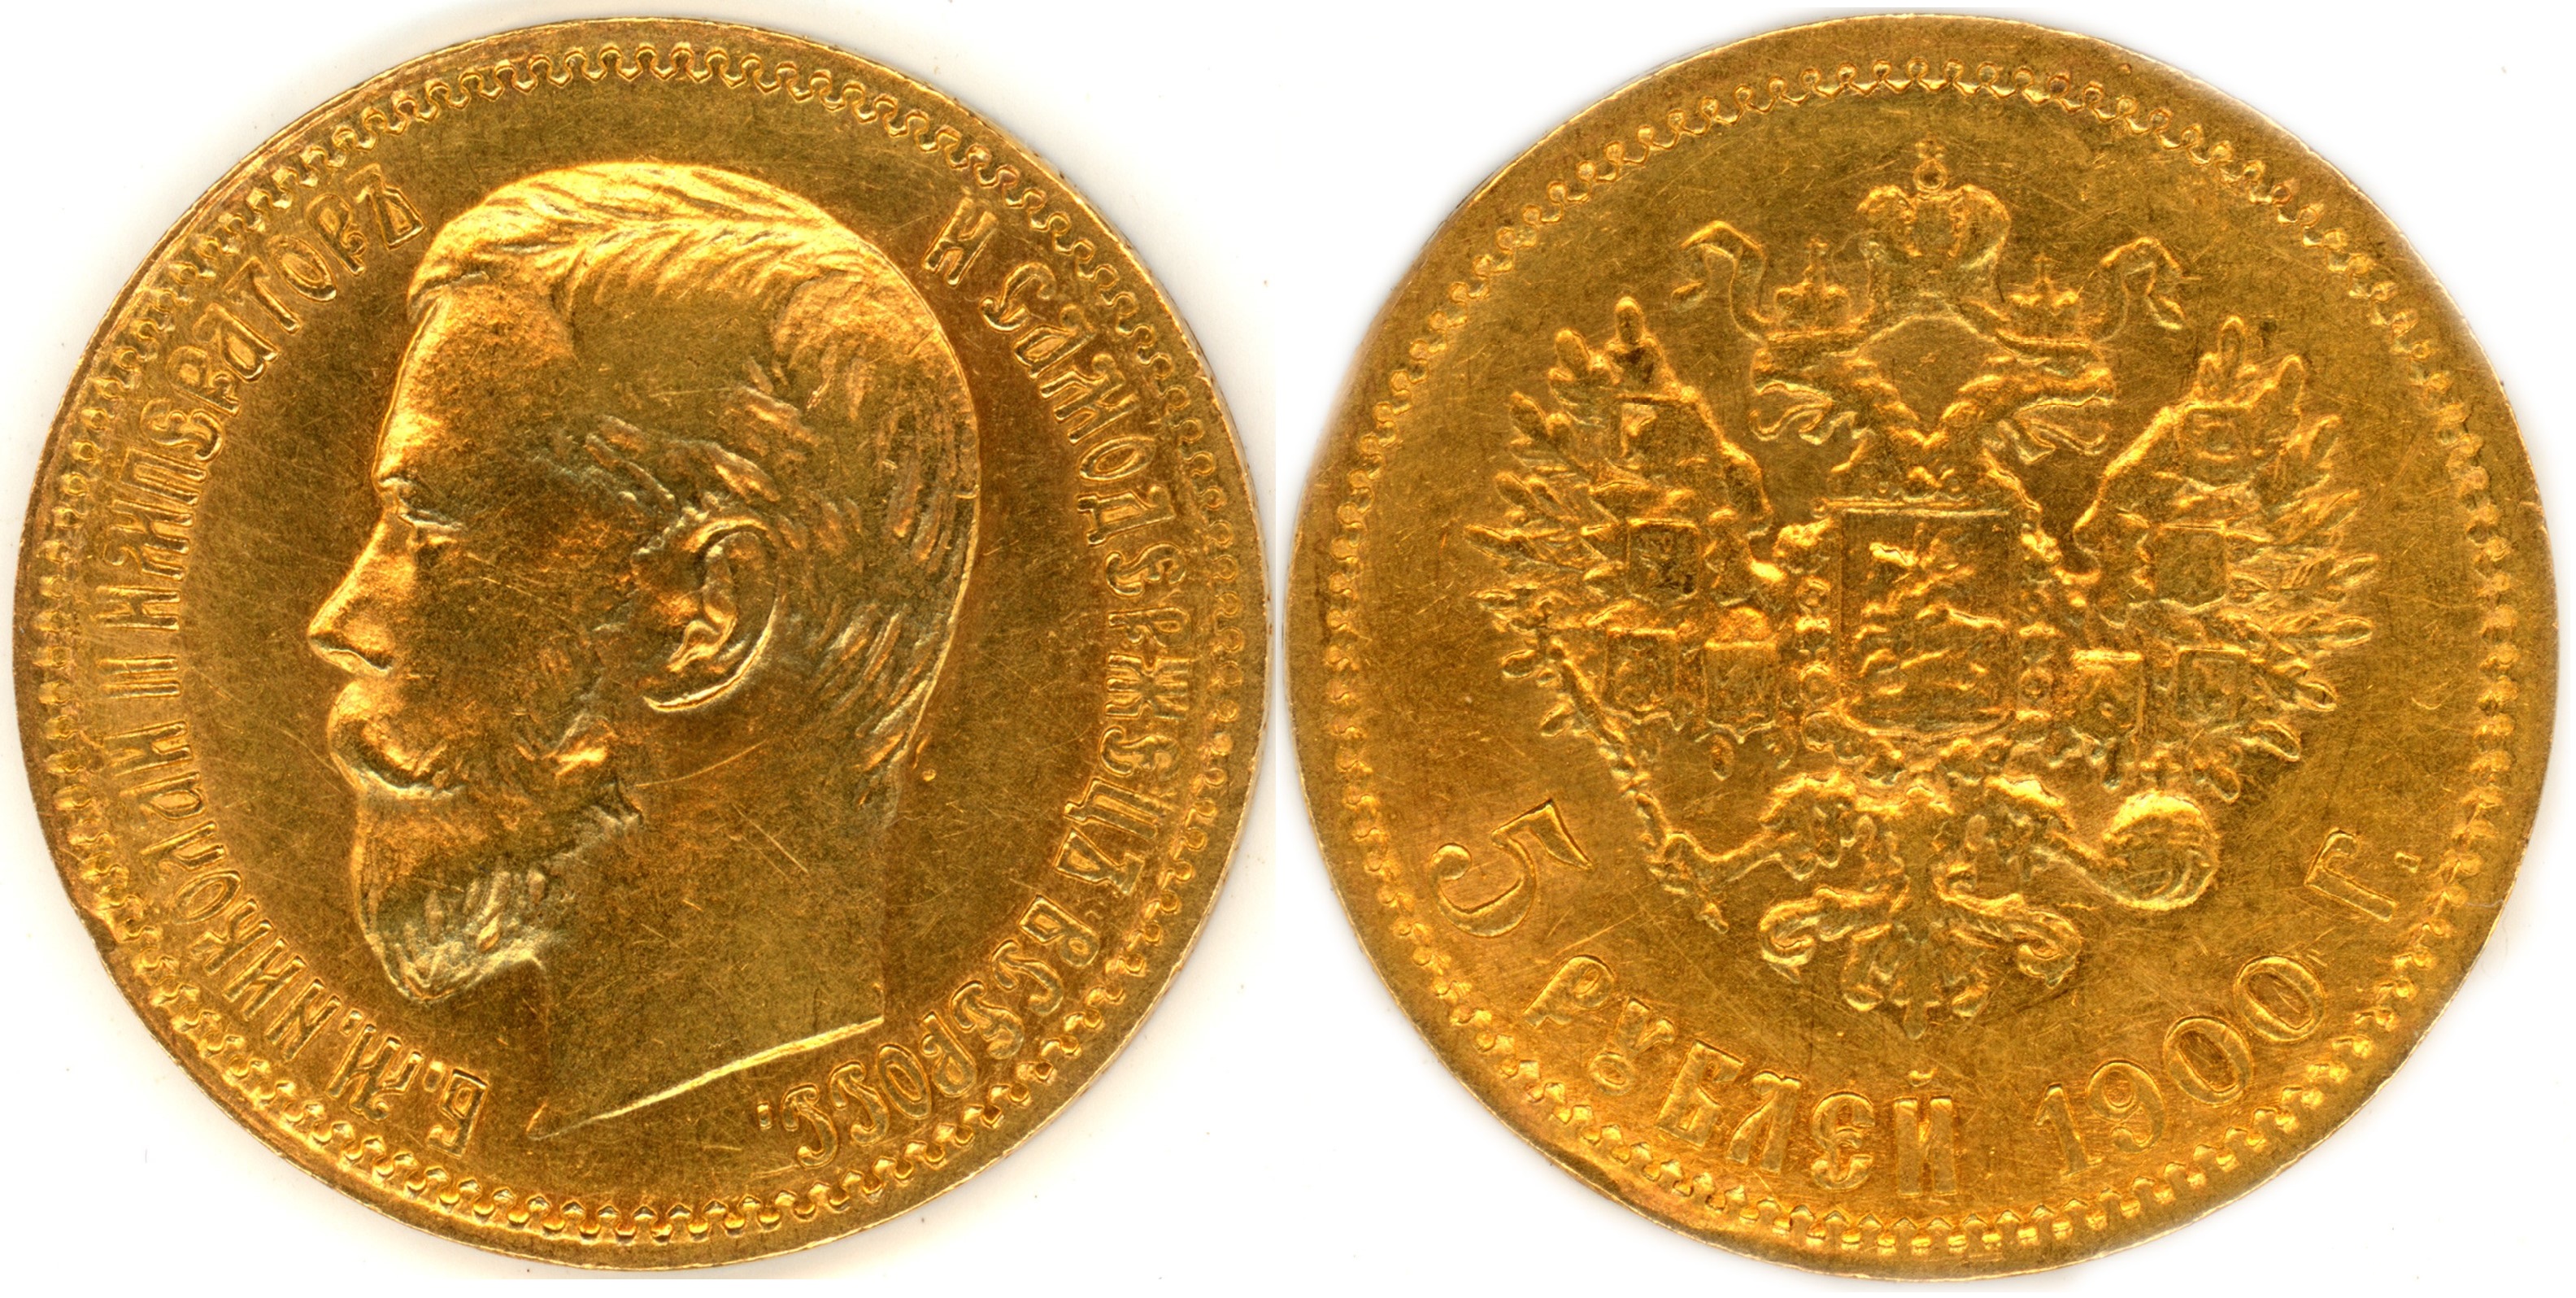 50 руб золотые монеты. 7рублей 50копеек 1897. 7 Рублей 50 копеек 1897 года.